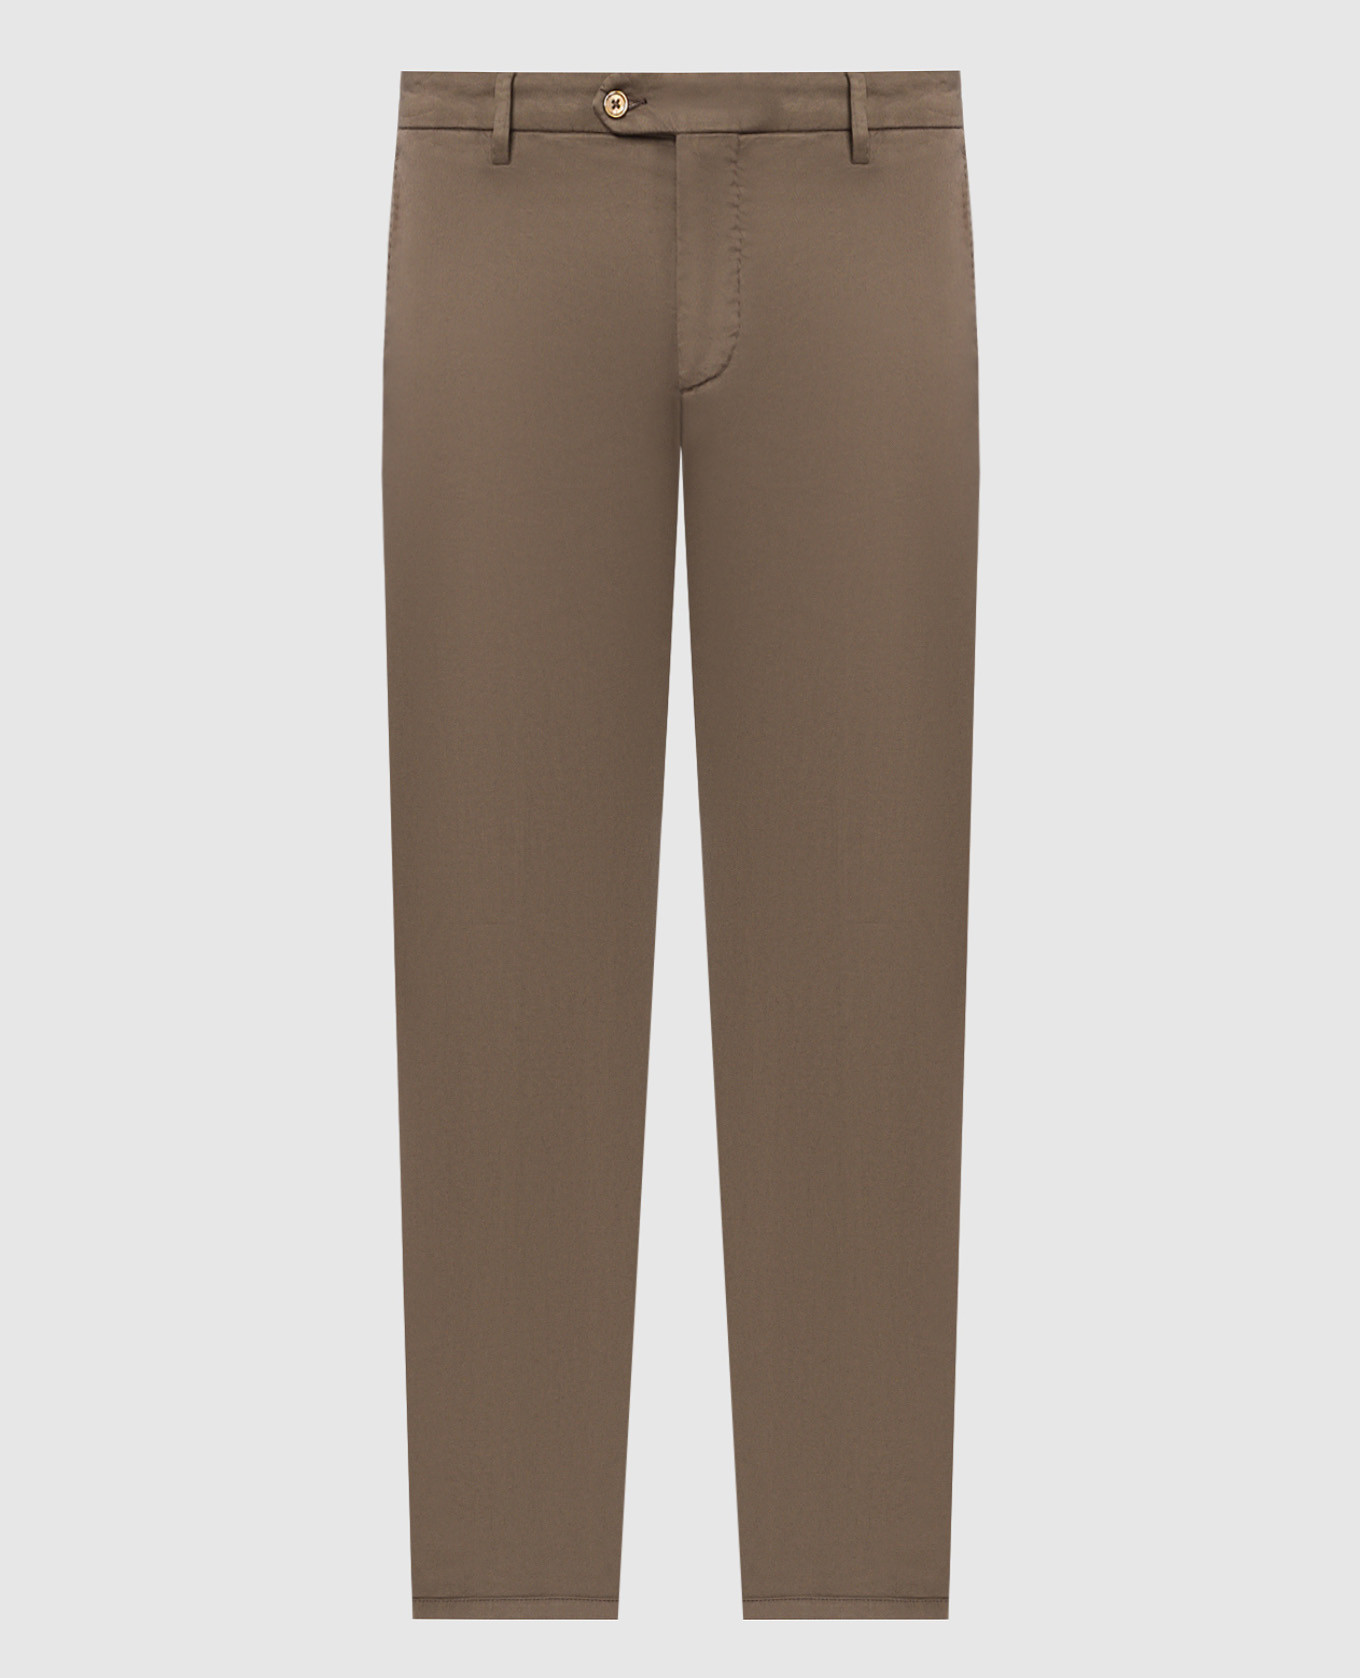 Brown pants SLIM 80 with silk